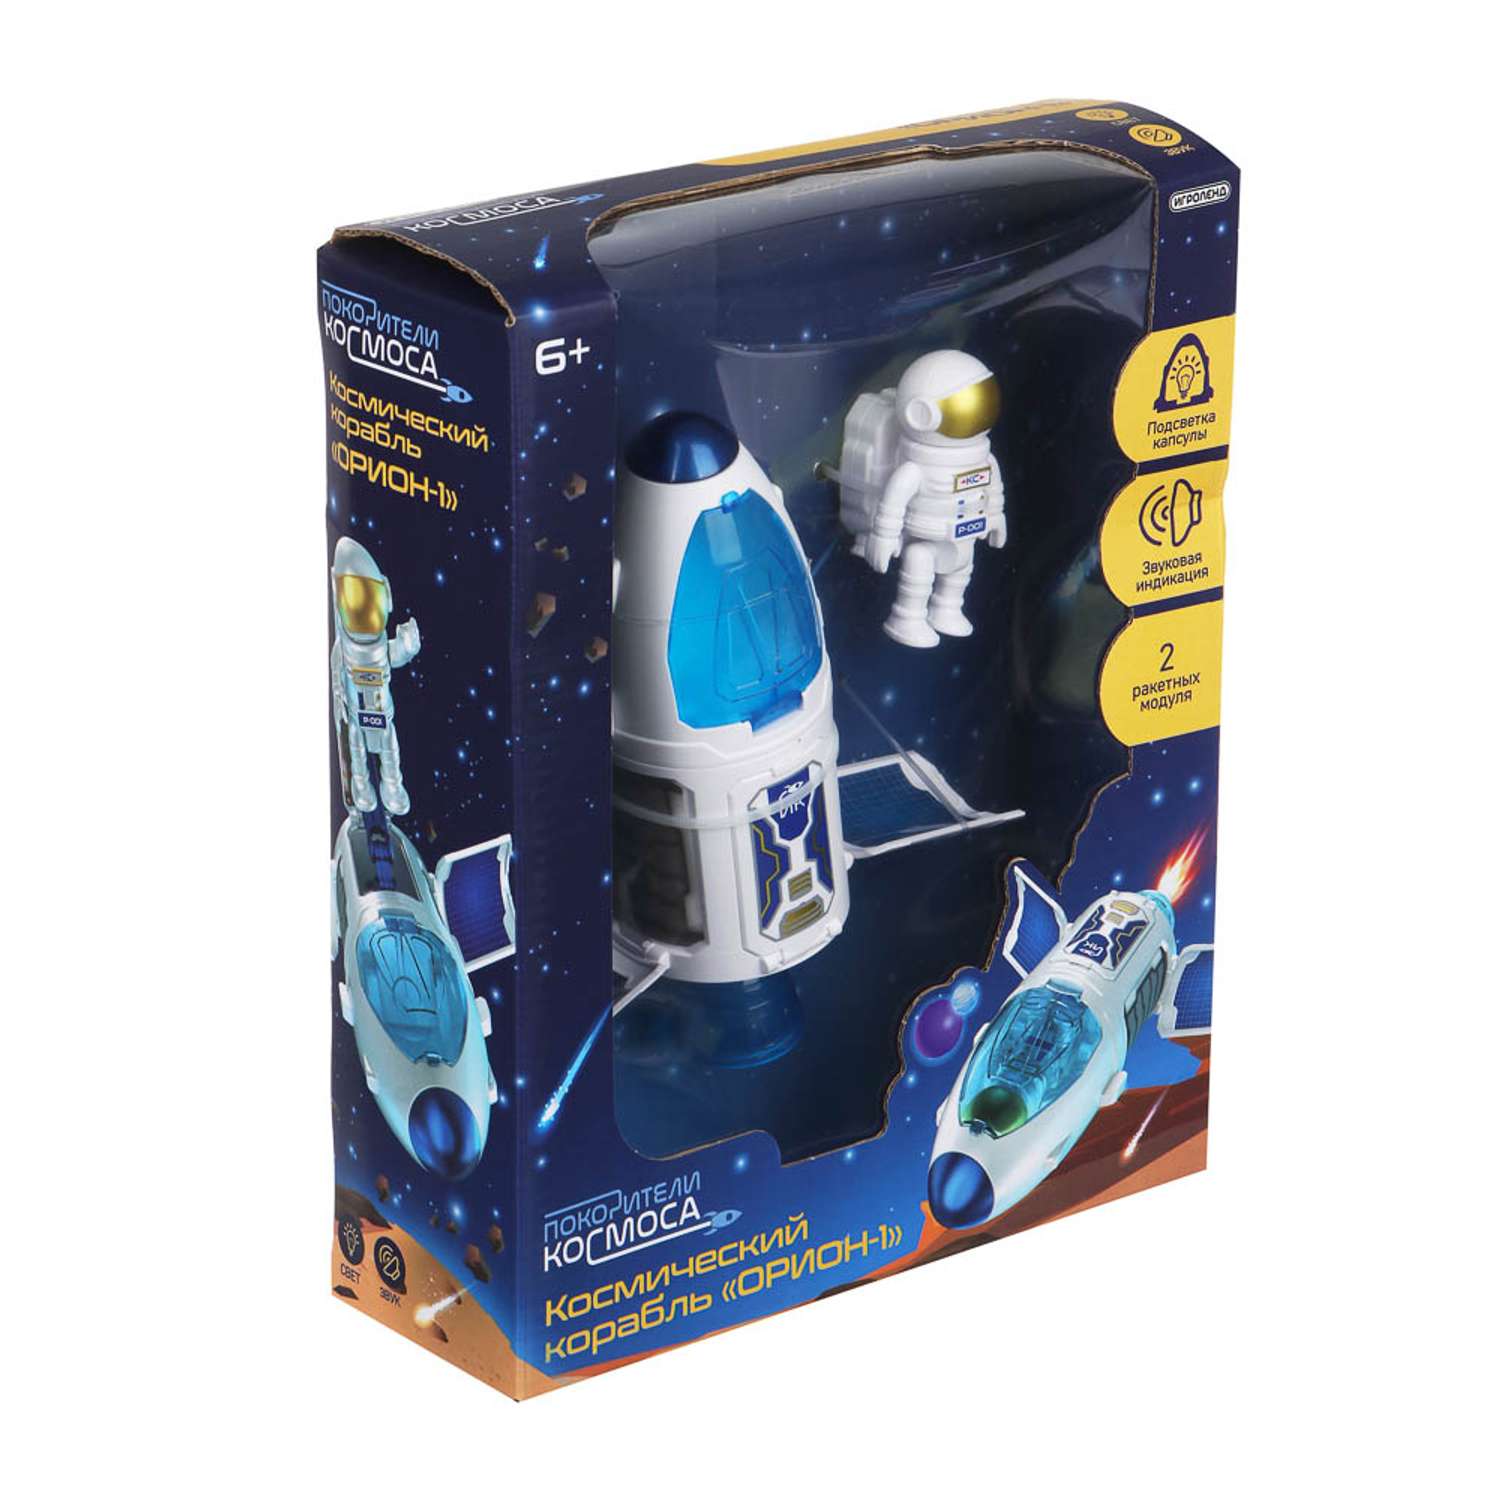 Игровой набор Игроленд Космический корабль с космонавтом Покорители космоса со светом и звуком - фото 1